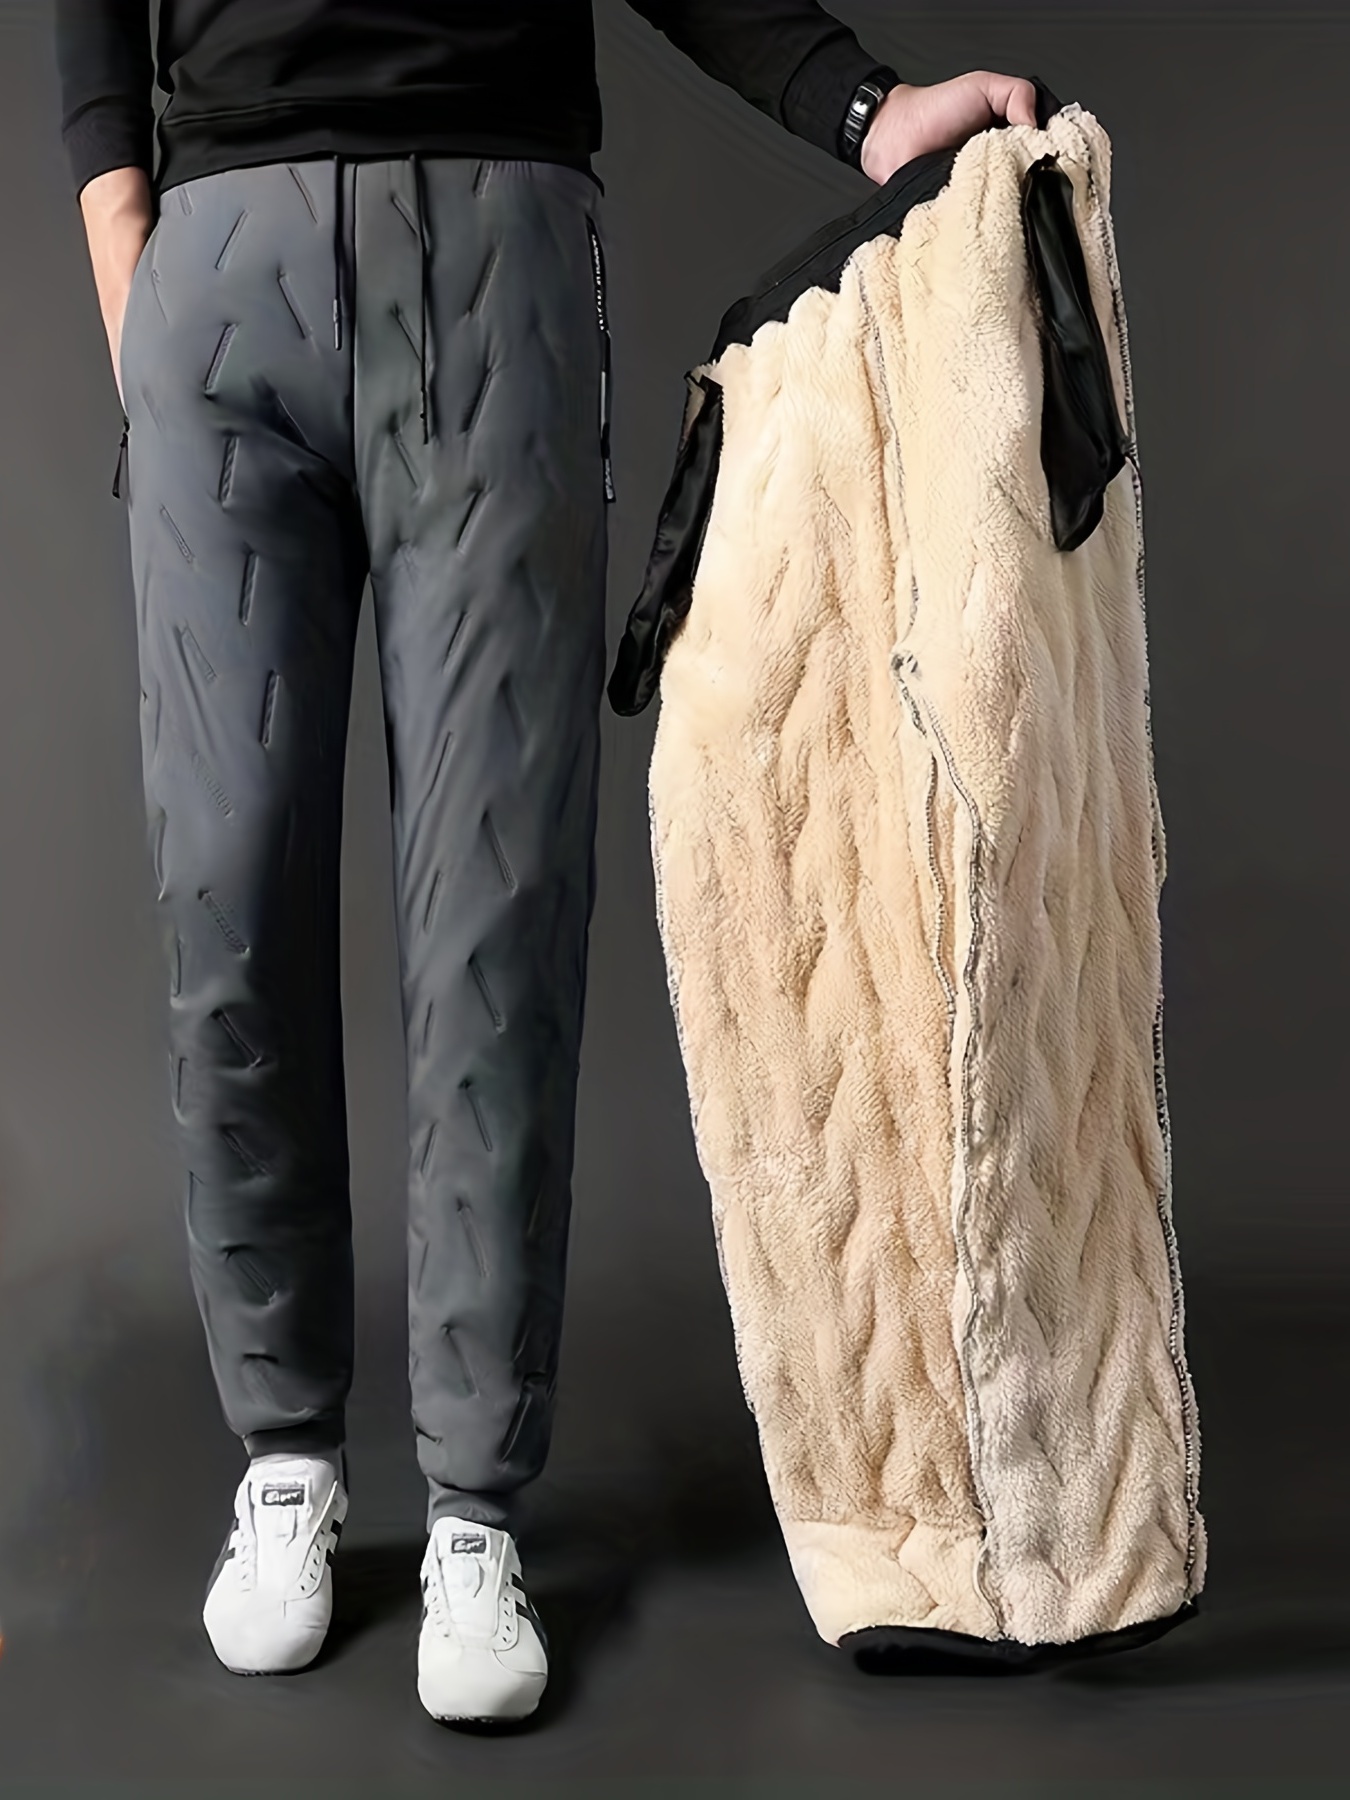  Yeokou - Pantalones deportivos con forro de vellón